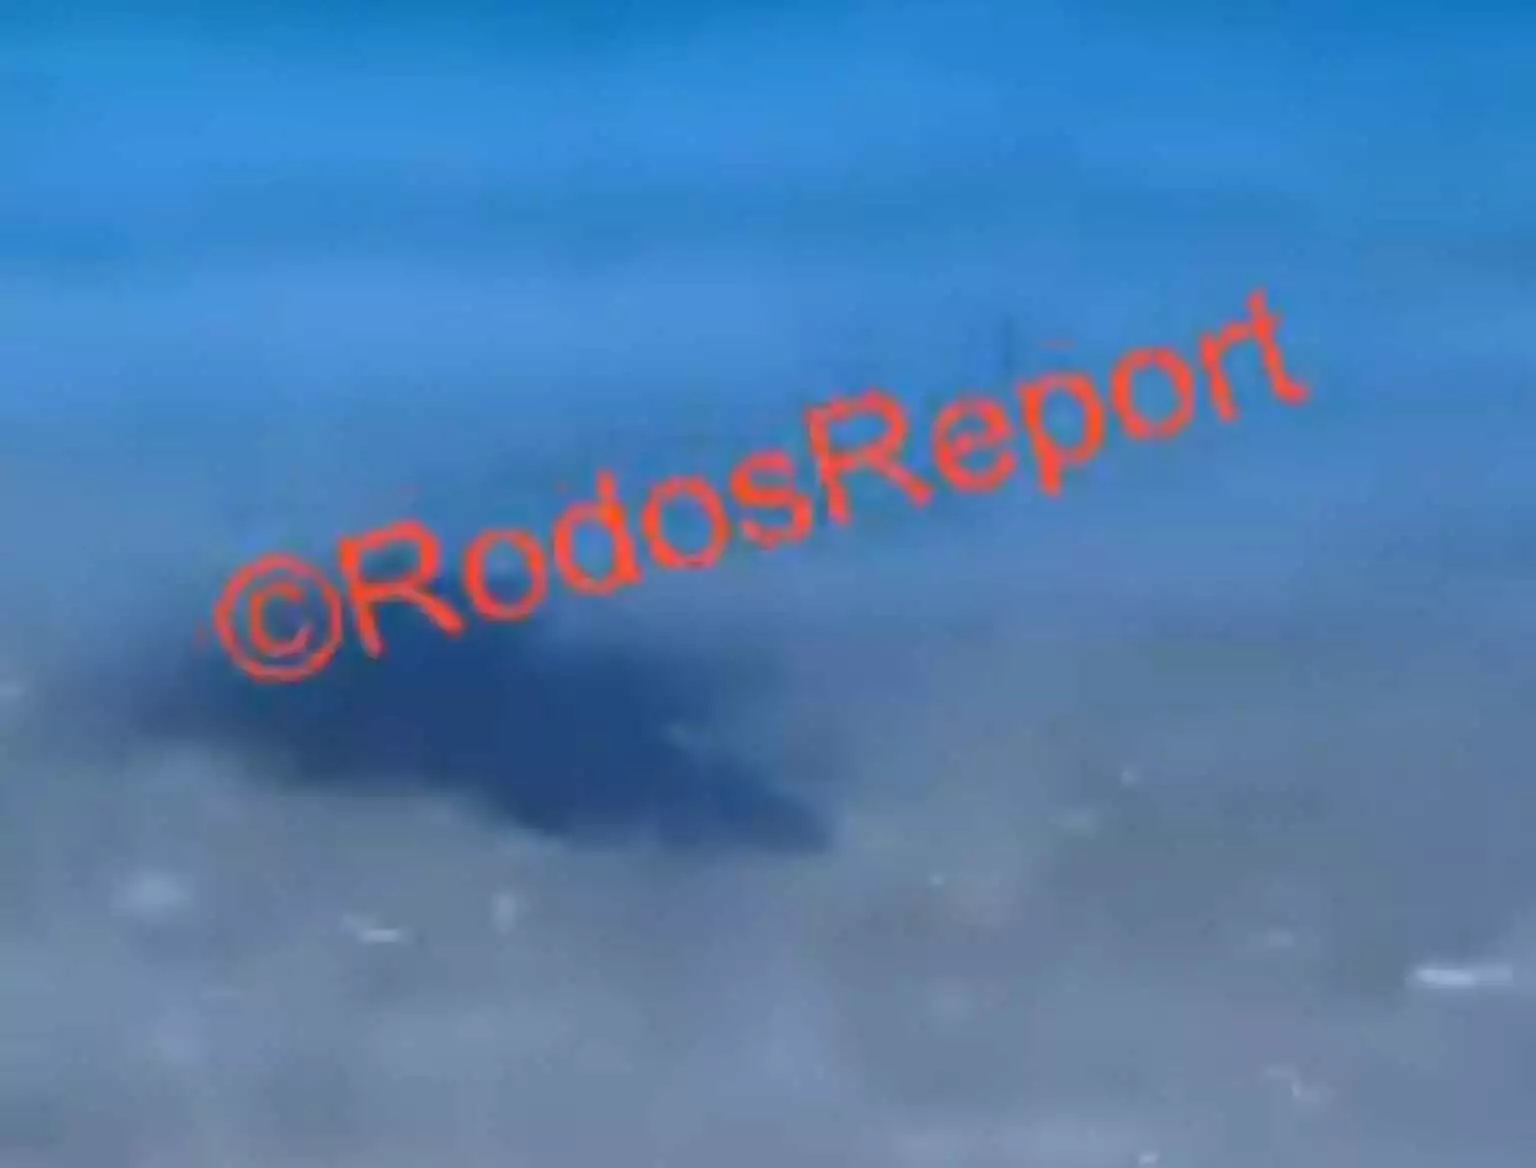 Ρόδος: Καρχαριοειδές εντοπίστηκε στα ρηχά παραλίας στο Χαράκι